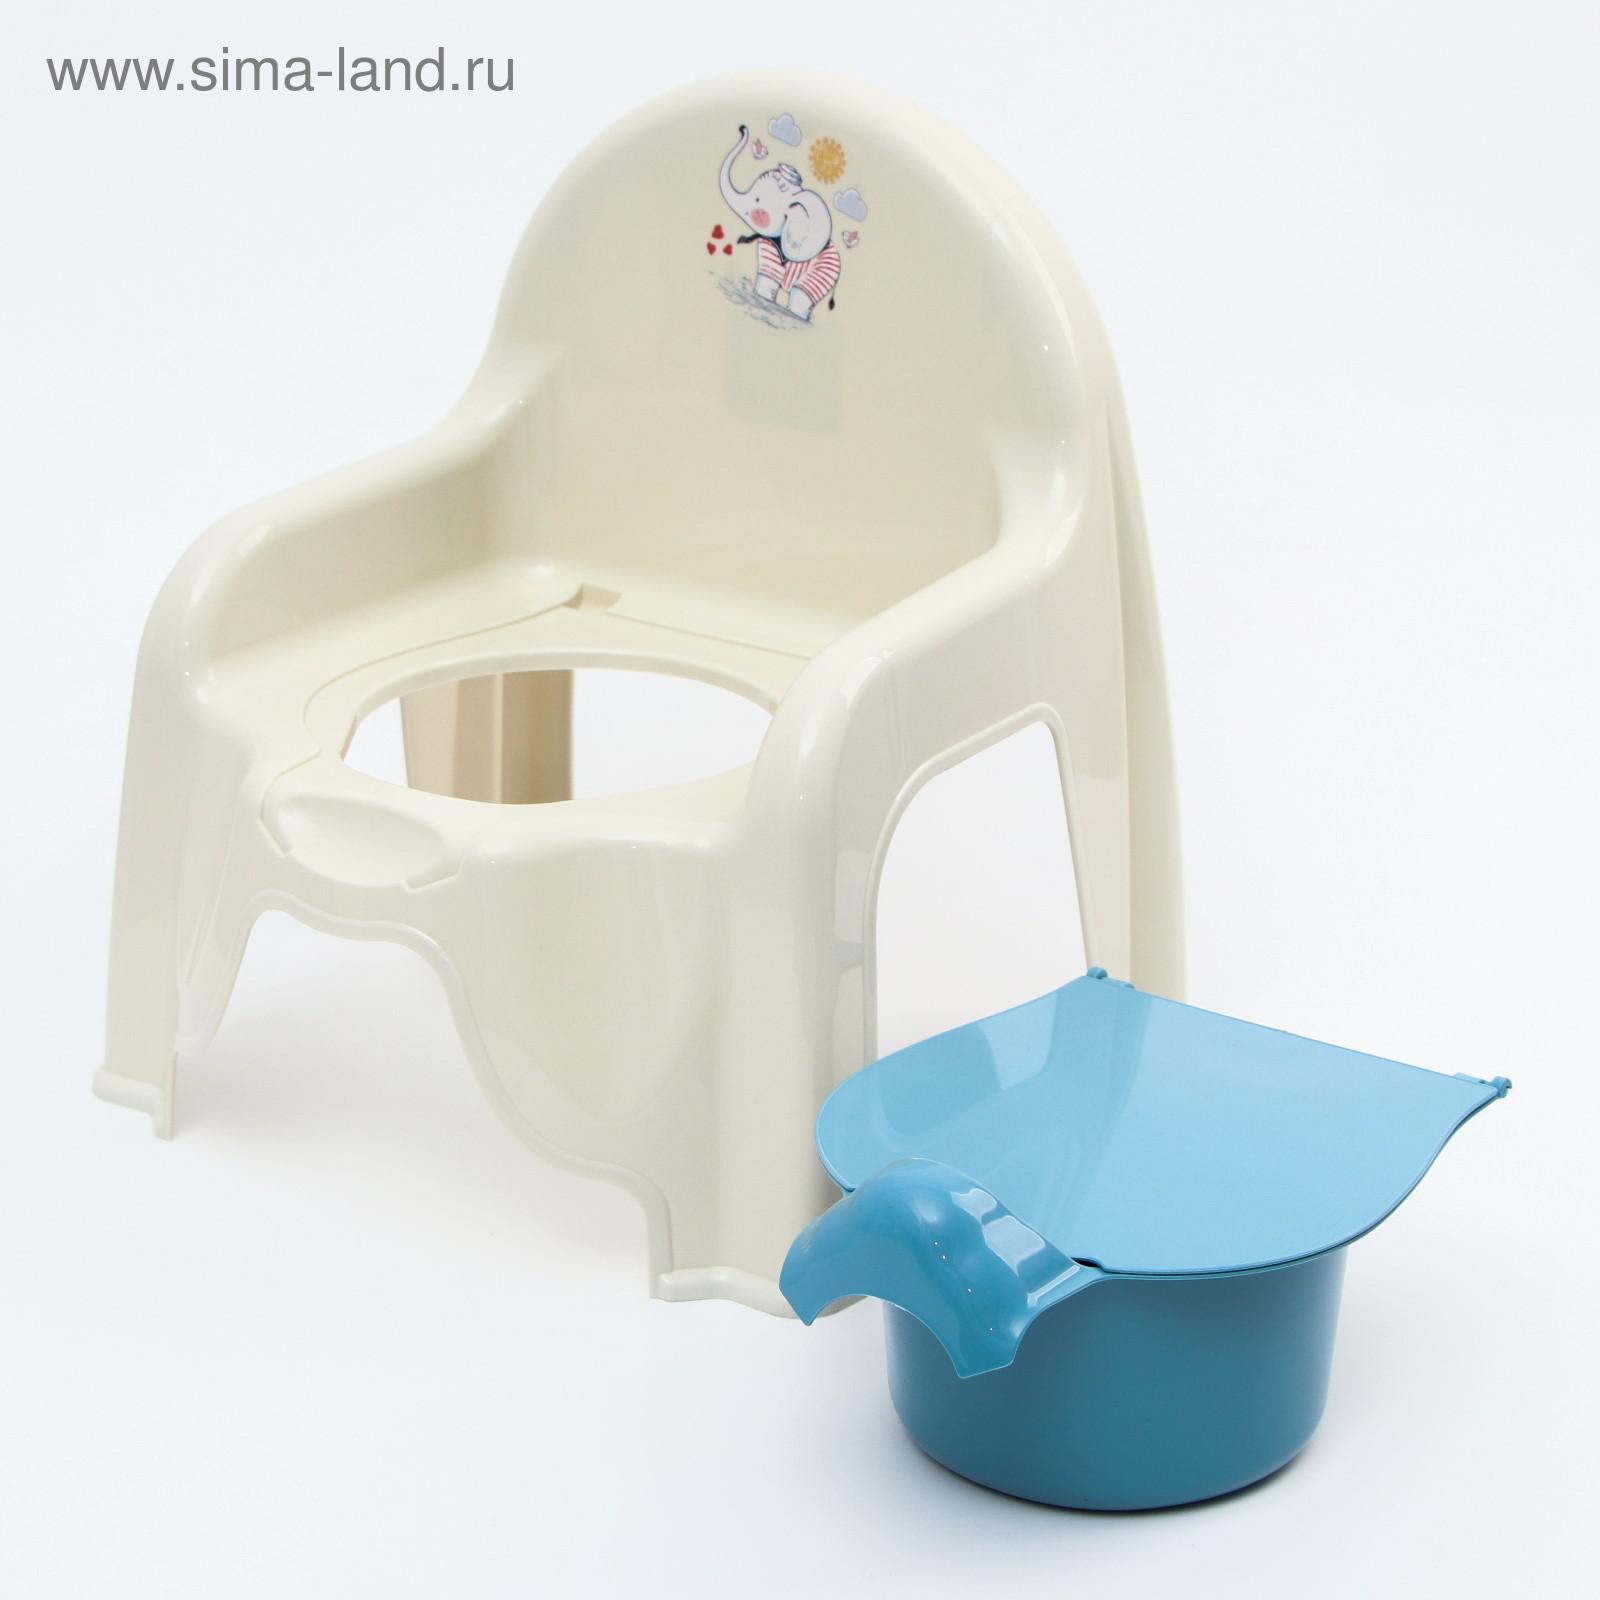 Горшок стульчик детский Слоник. М-пластика. М2596